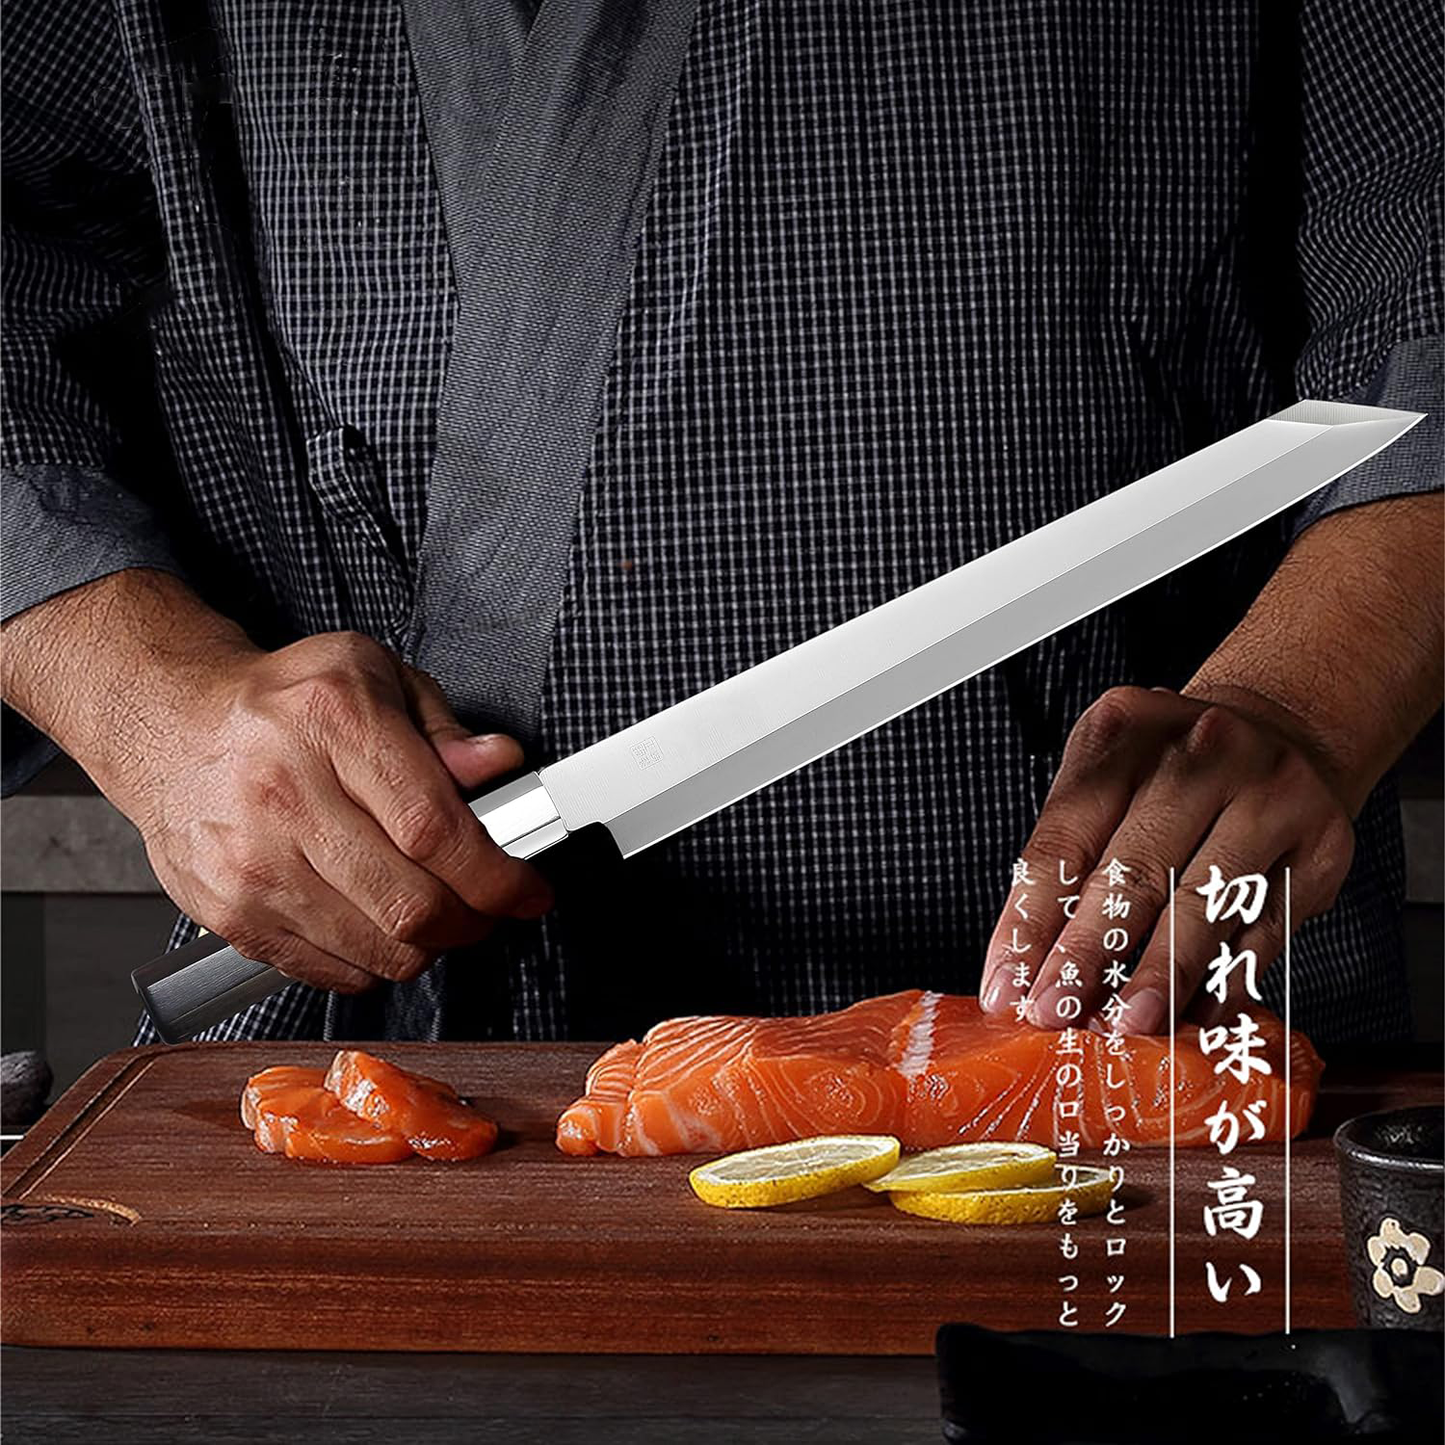 KD Japanese Kiritsuke Chef Sushi Knife Ebony Wood Handle